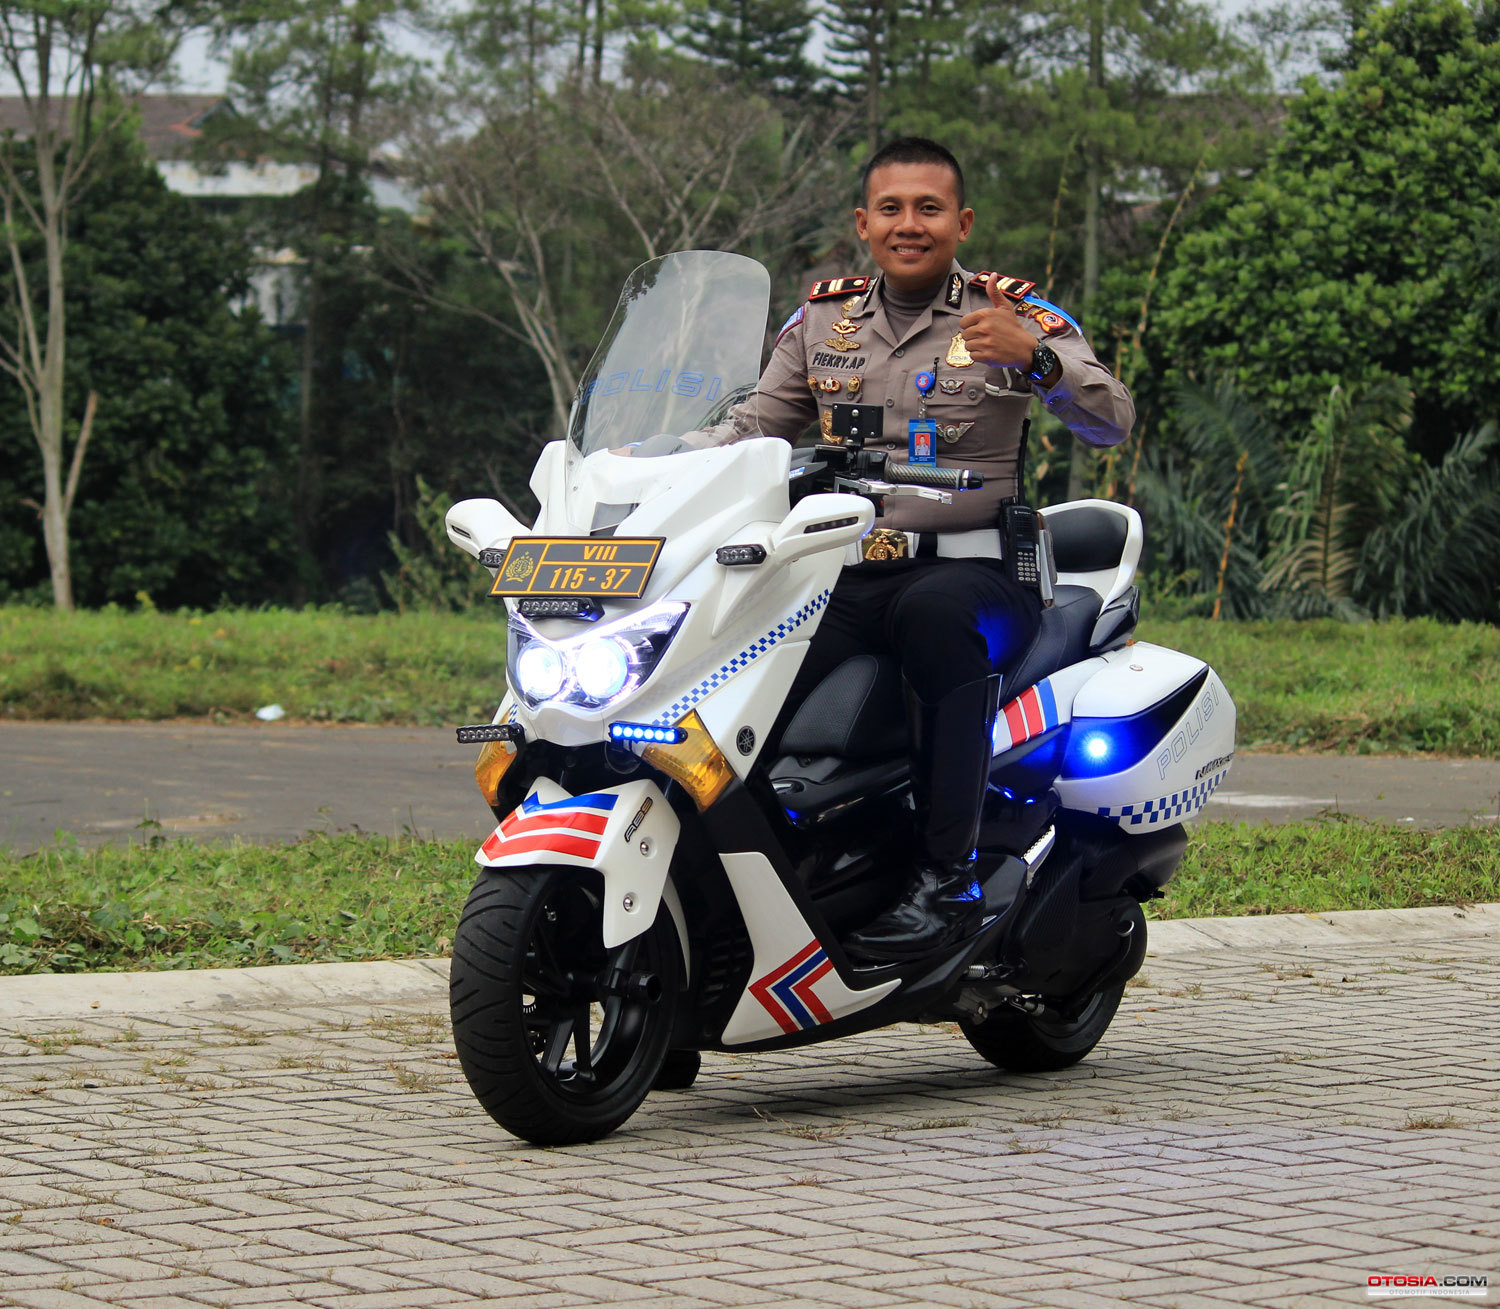 Yamaha N Max Modifikasi Motor Polisi Otosiacom